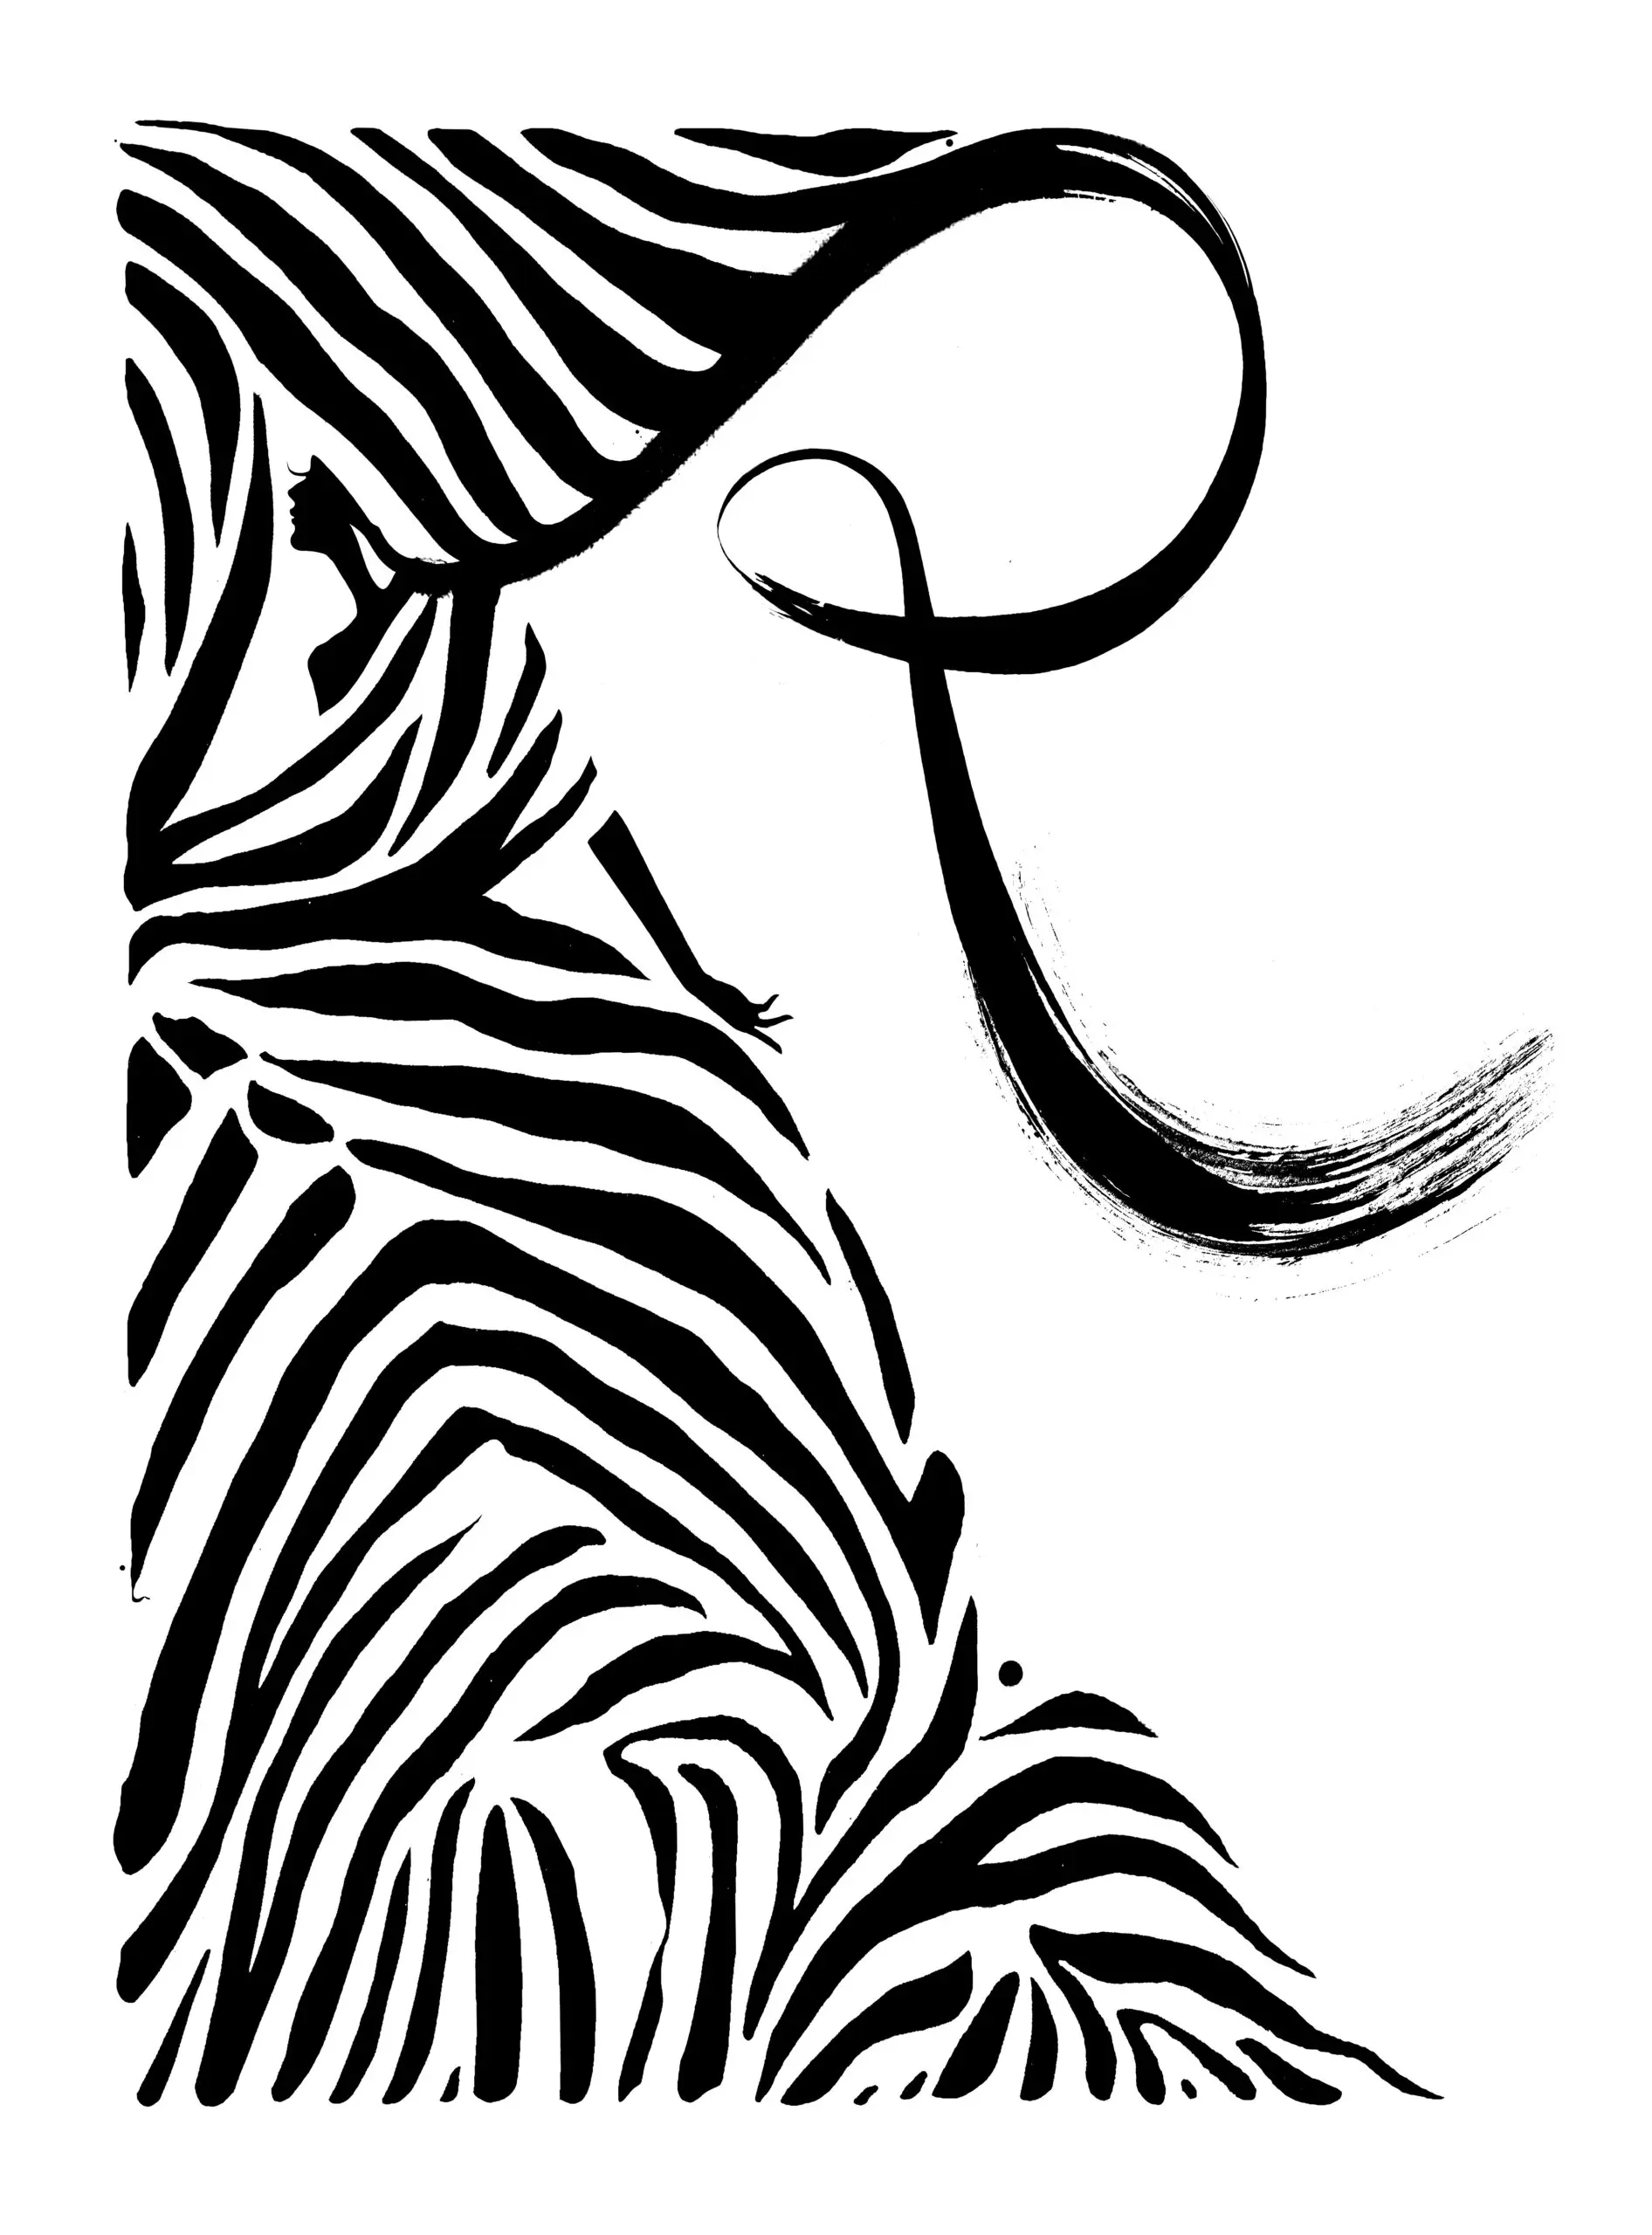 Wandbild (3645) Zebra präsentiert: Menschen,Kreatives,Frauen,Sonstiges Kreatives